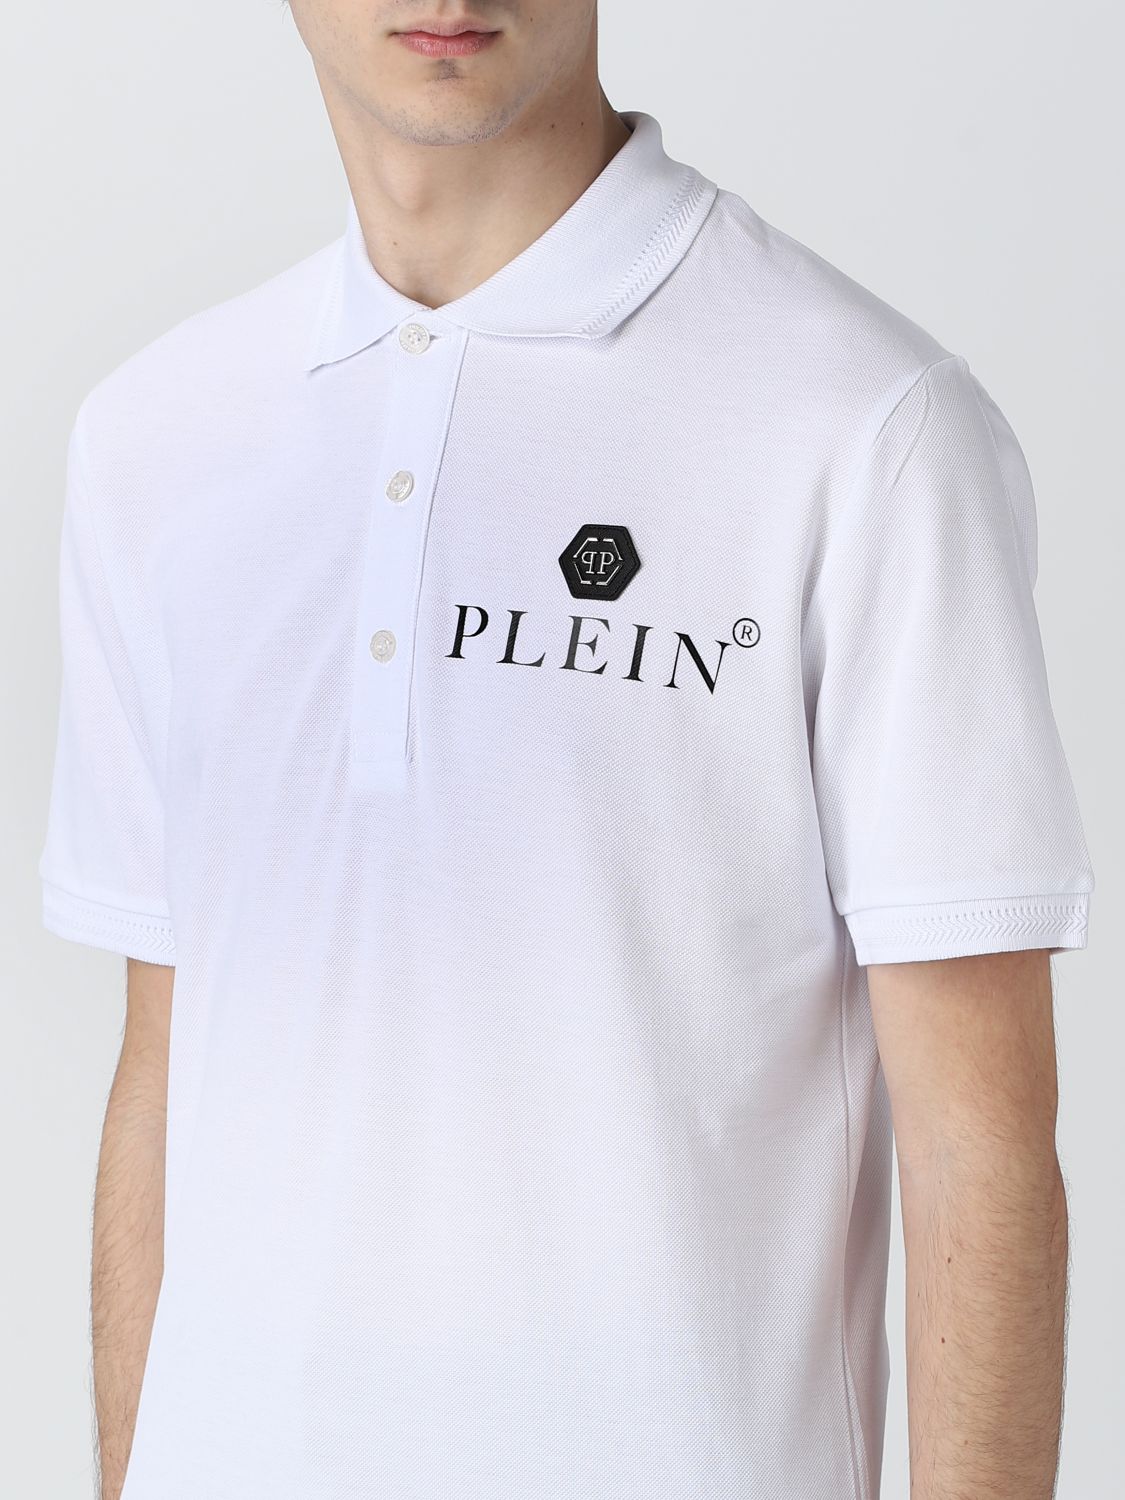 Bruin waar dan ook Intensief PHILIPP PLEIN: polo shirt for man - White | Philipp Plein polo shirt  SACCMTK5596PTE003N online on GIGLIO.COM